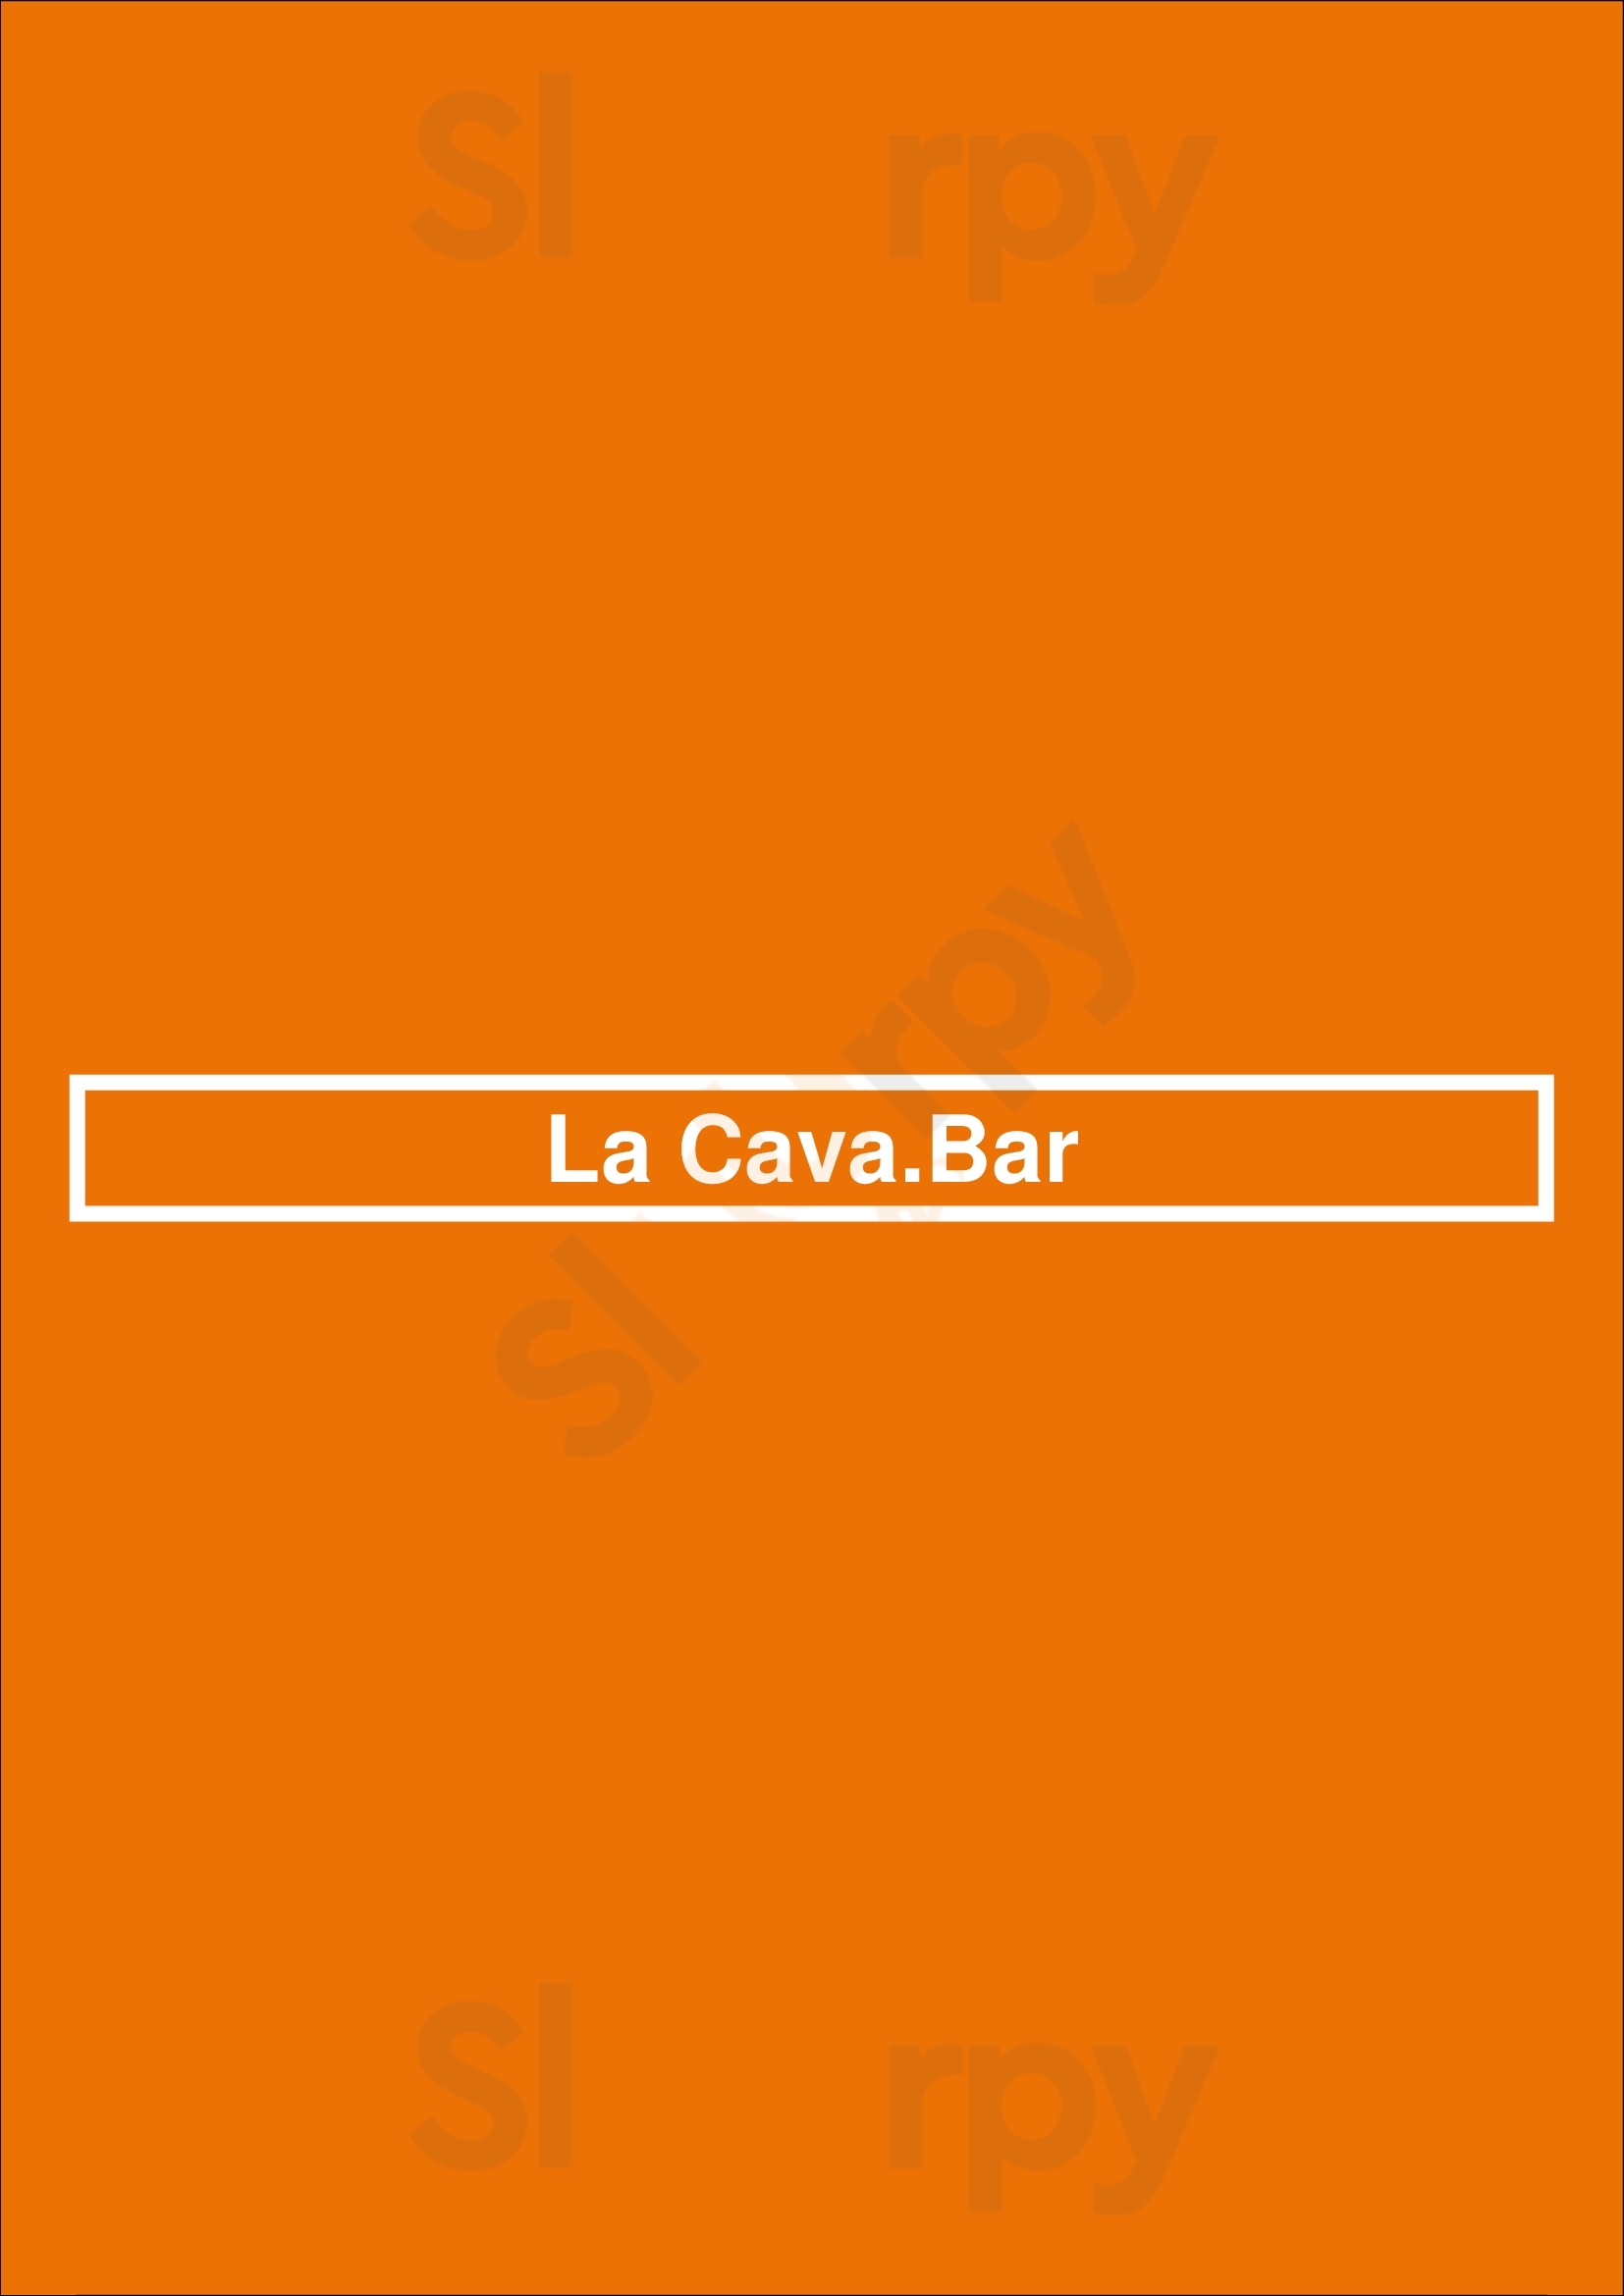 La Cava.bar Sevilla Menu - 1